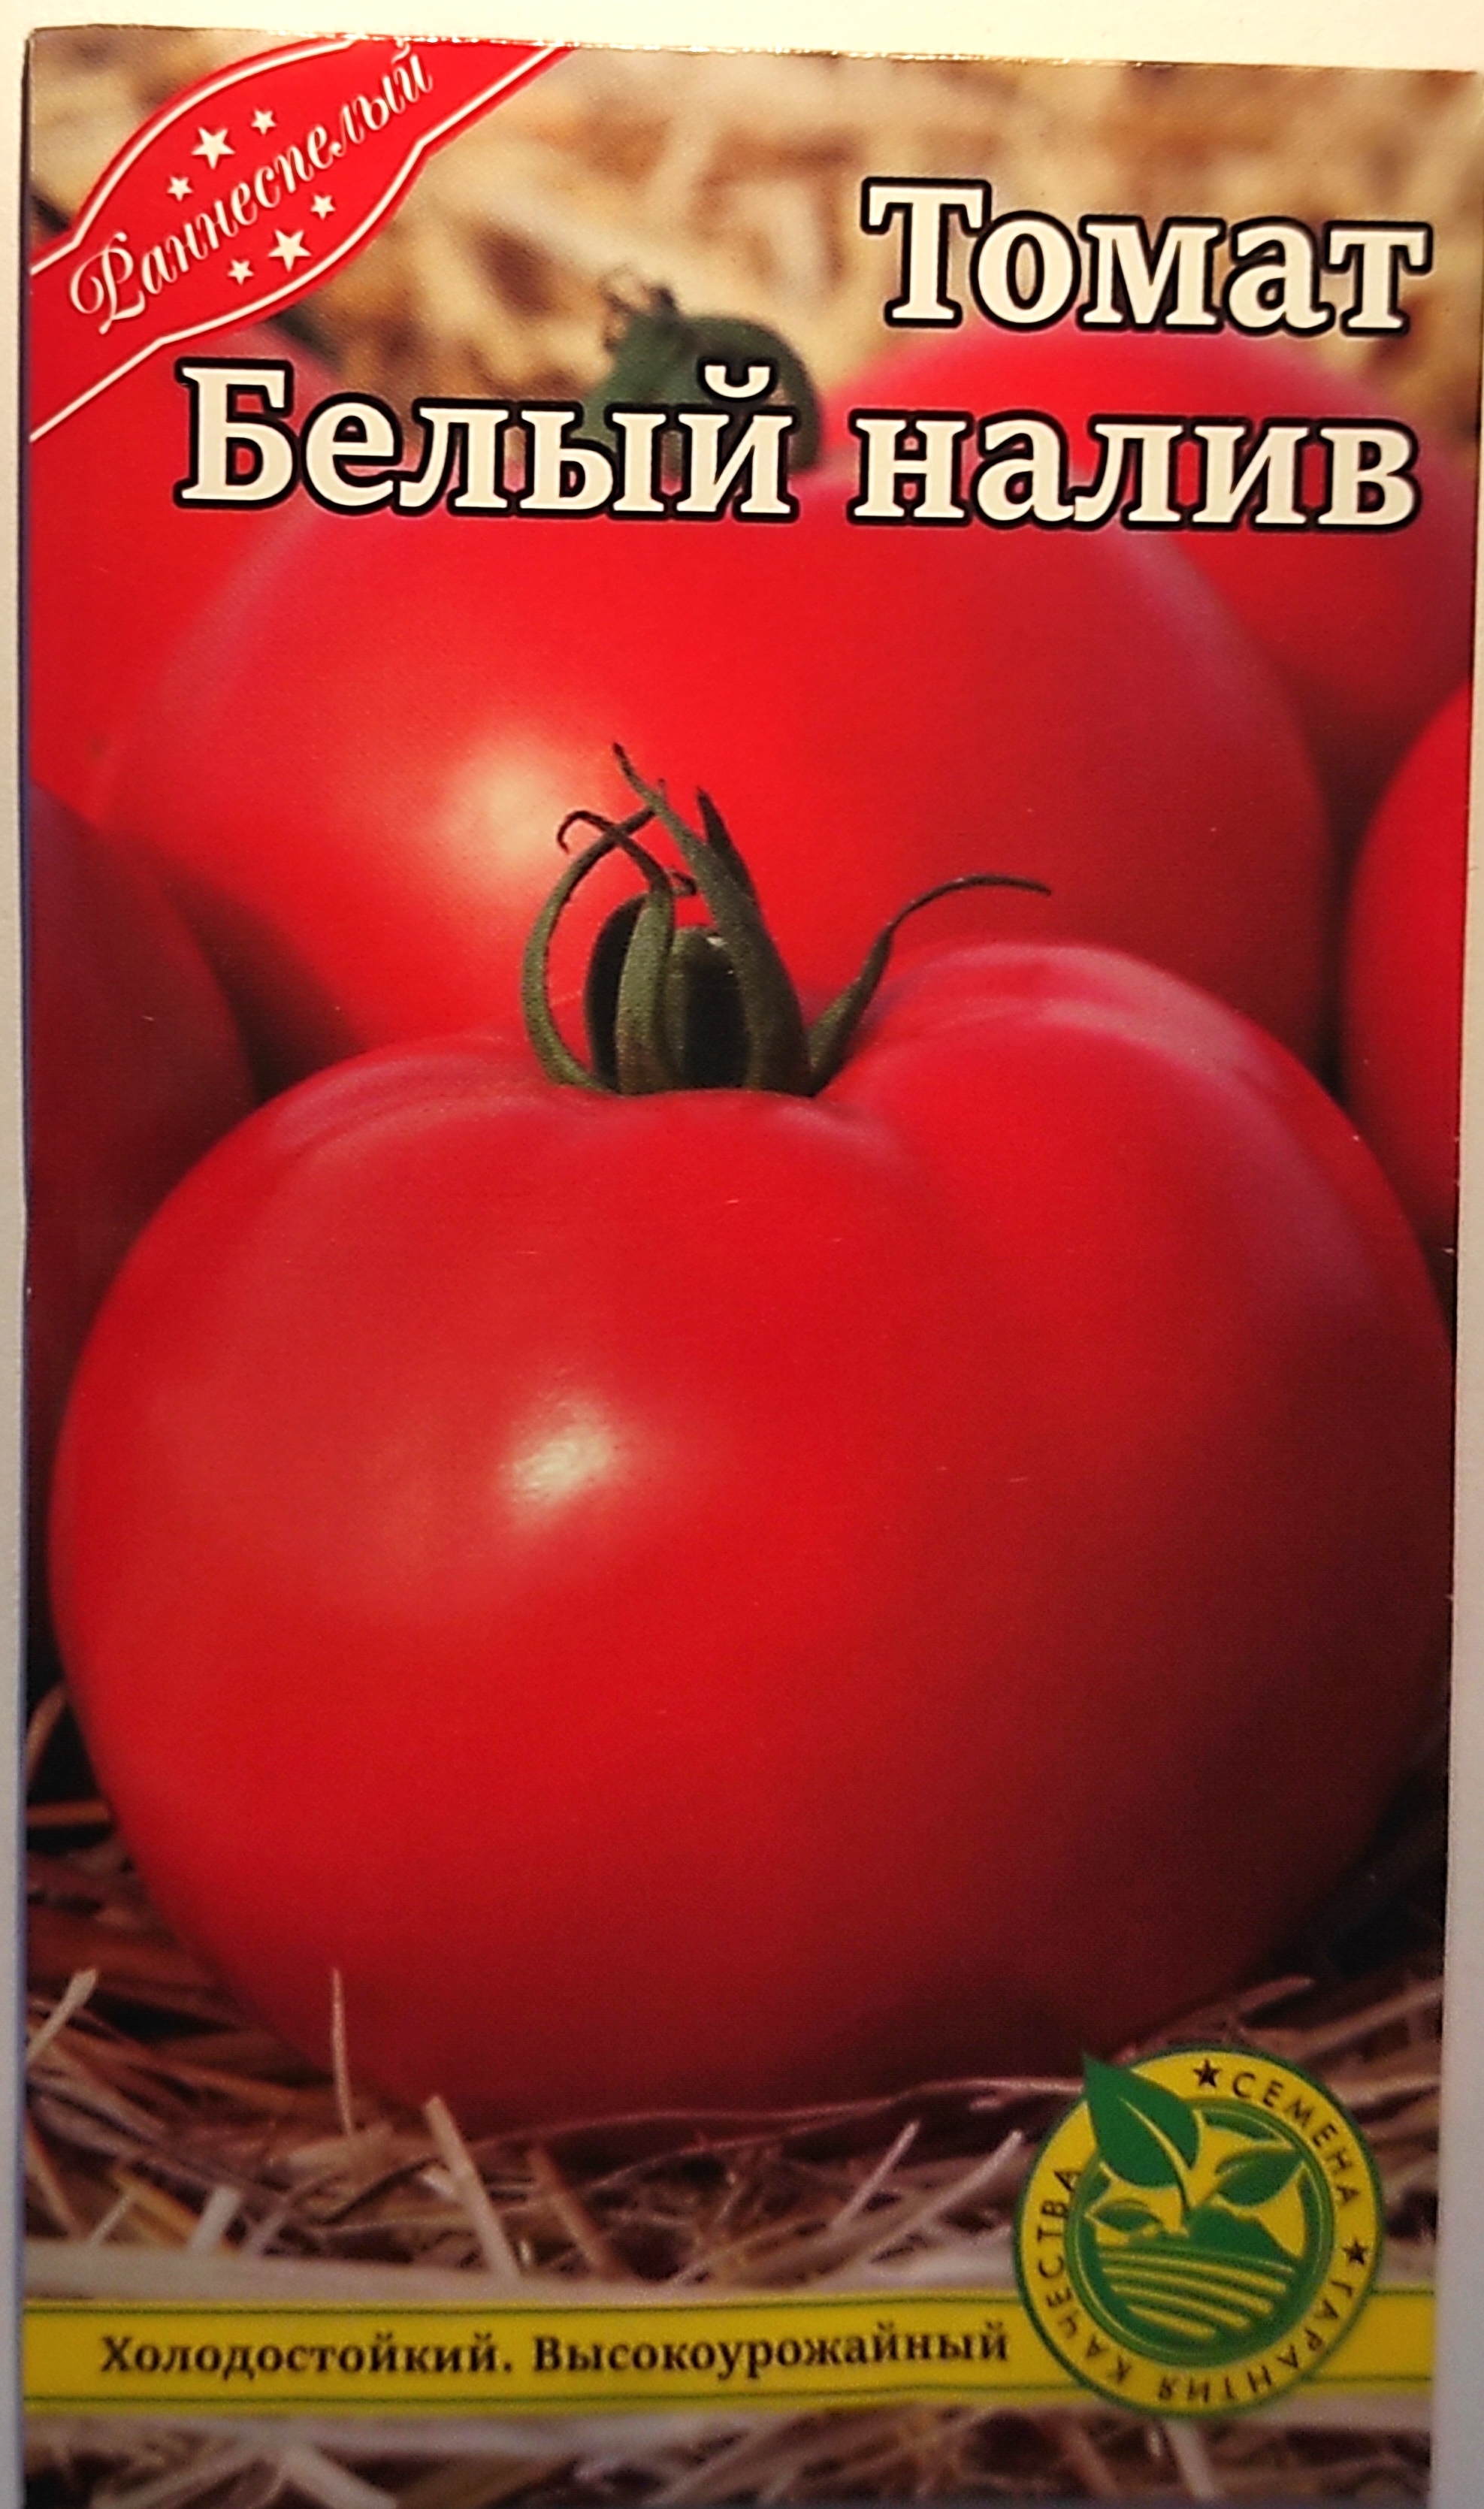 помидор белый налив описание сорта фото